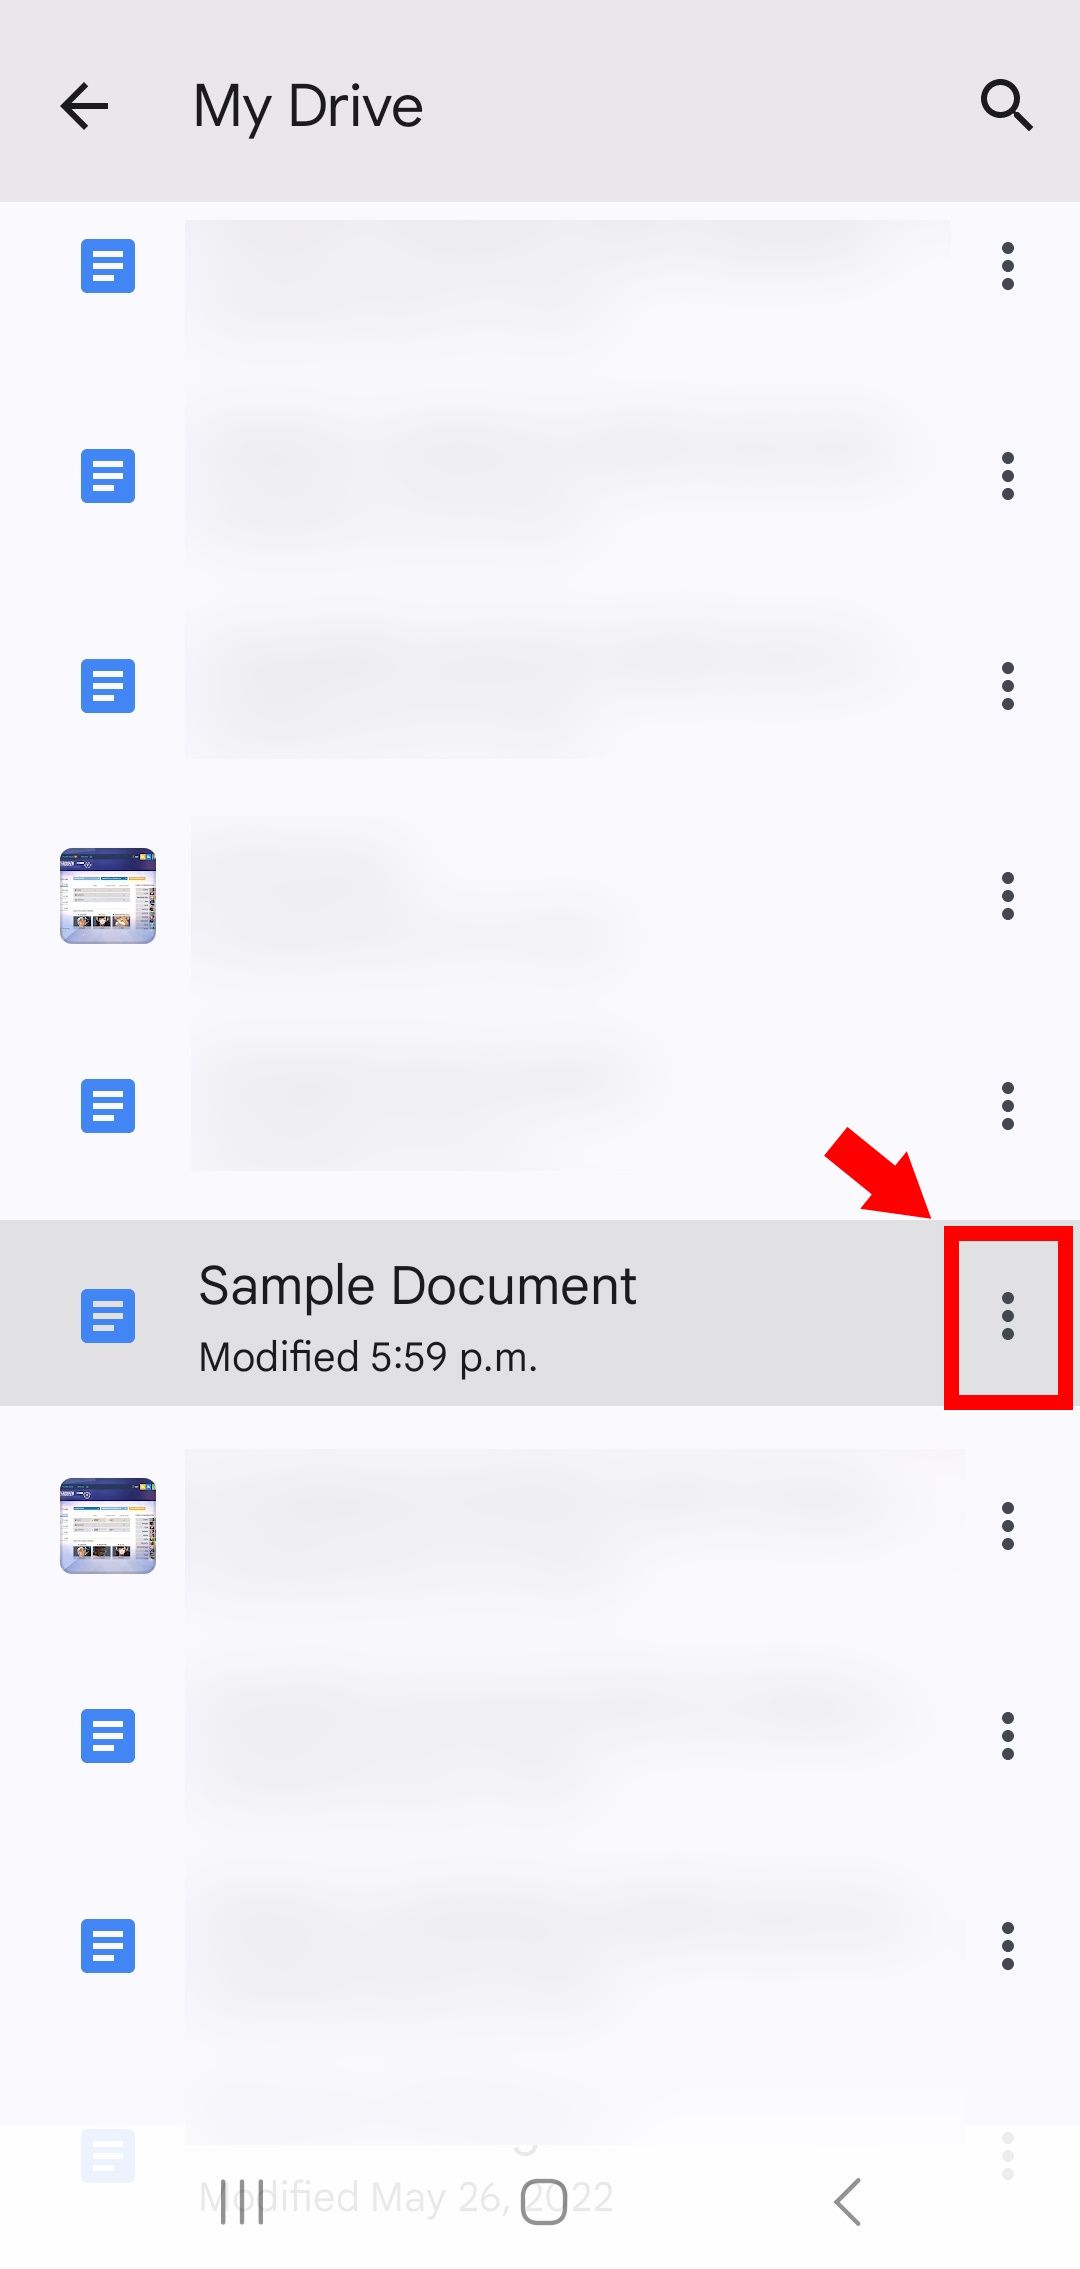 seta sólida vermelha apontando para o contorno do retângulo vermelho sobre o ícone de três pontos (kebab) ao lado de um arquivo no Google Drive